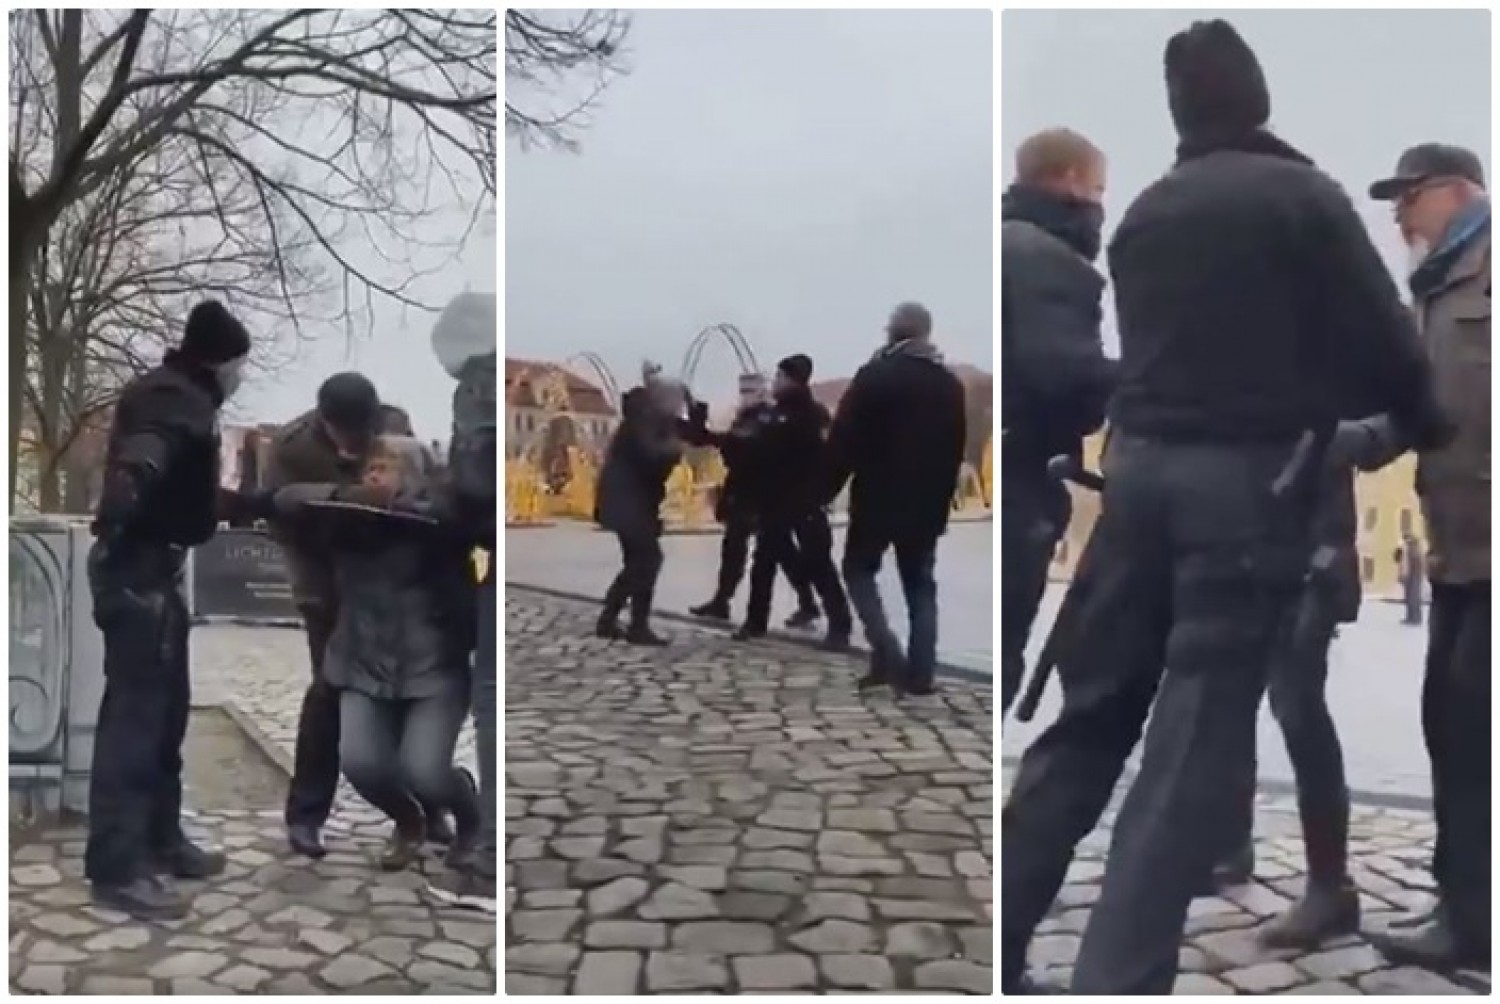 Hihetetlen: békésen sétáló nyugdíjas párra támadtak a rendőrök